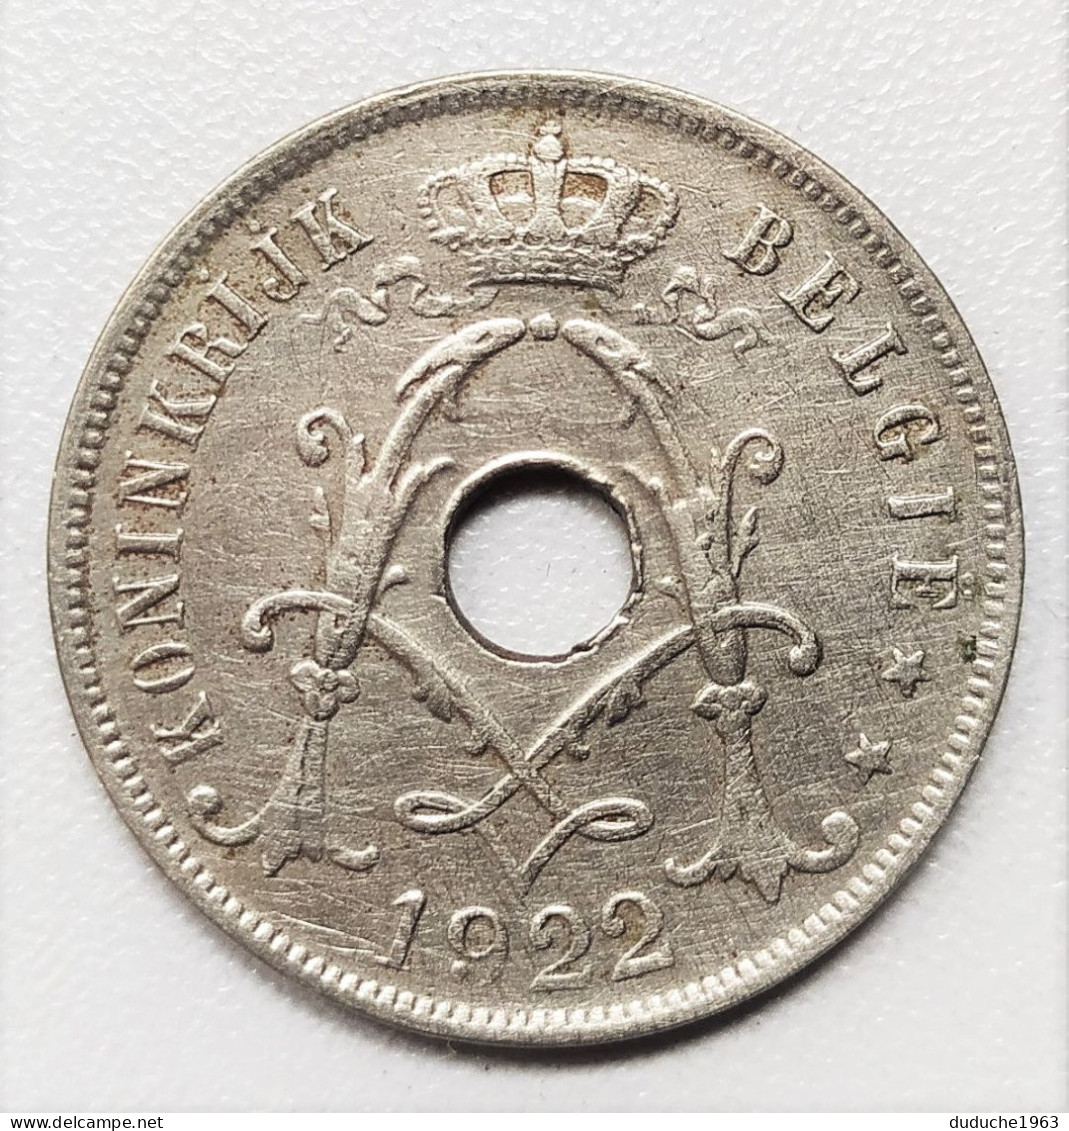 Belgique - 25 Centimes 1922 - 25 Cents